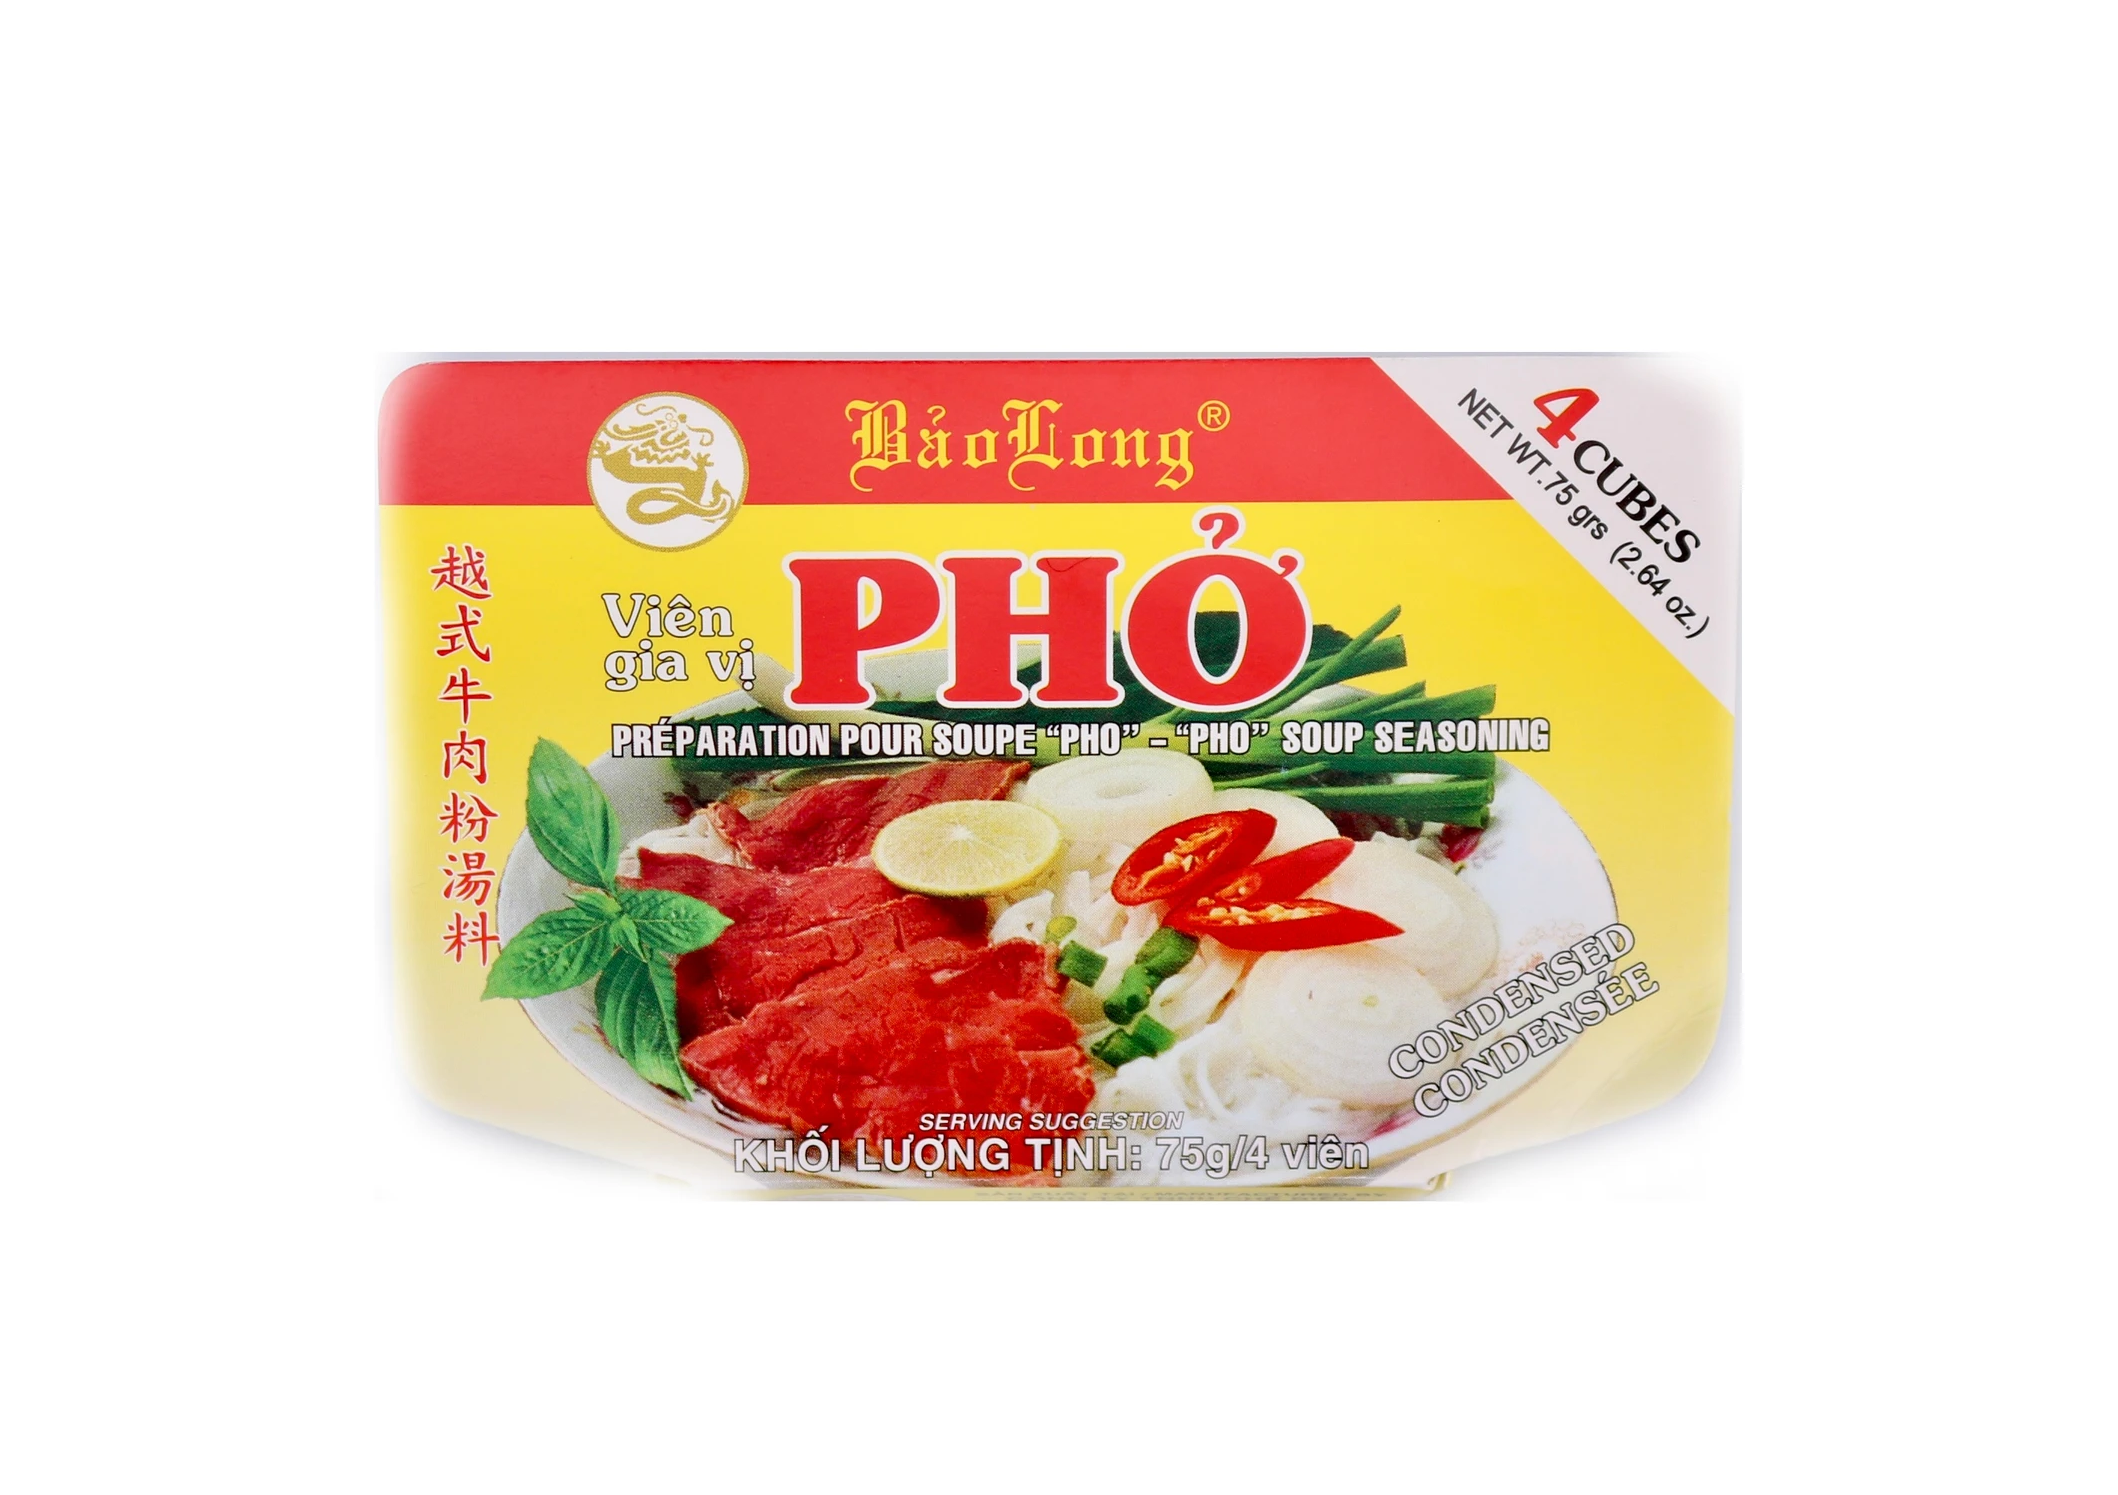 Bao Long Pho soup seasoning